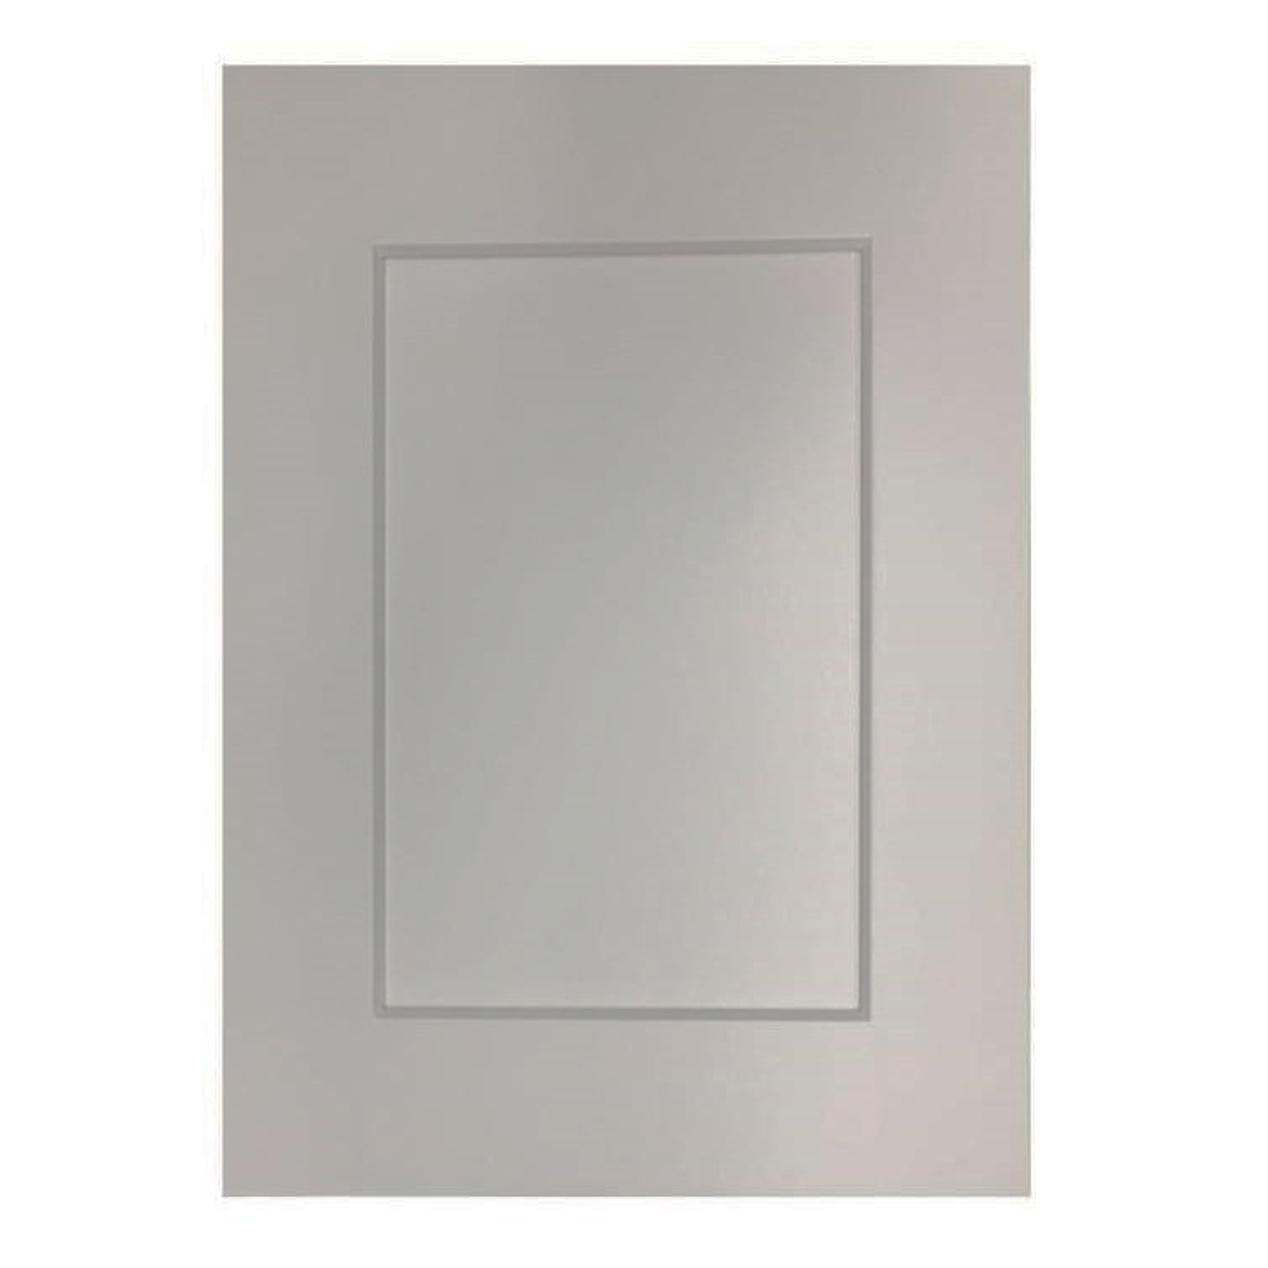 WDC243012(GRS) Glass Door Diagonal Cabinet